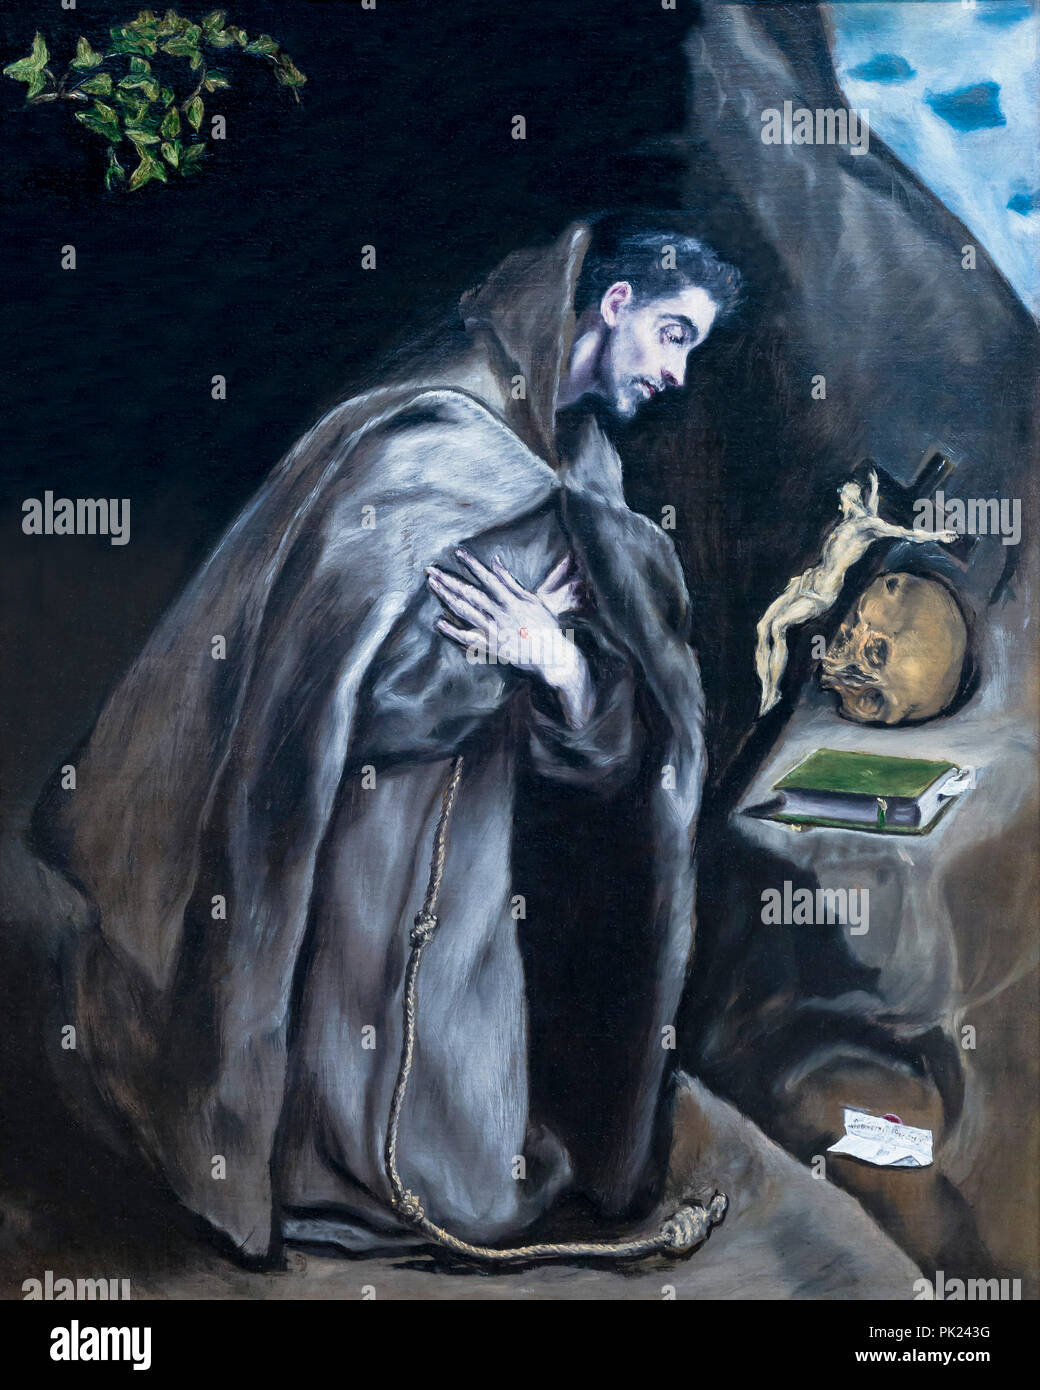 San Francisco arrodillado en la meditación, El Greco, 1595-1600, el Instituto de Arte de Chicago, Chicago, Illinois, EE.UU., América del Norte, Foto de stock